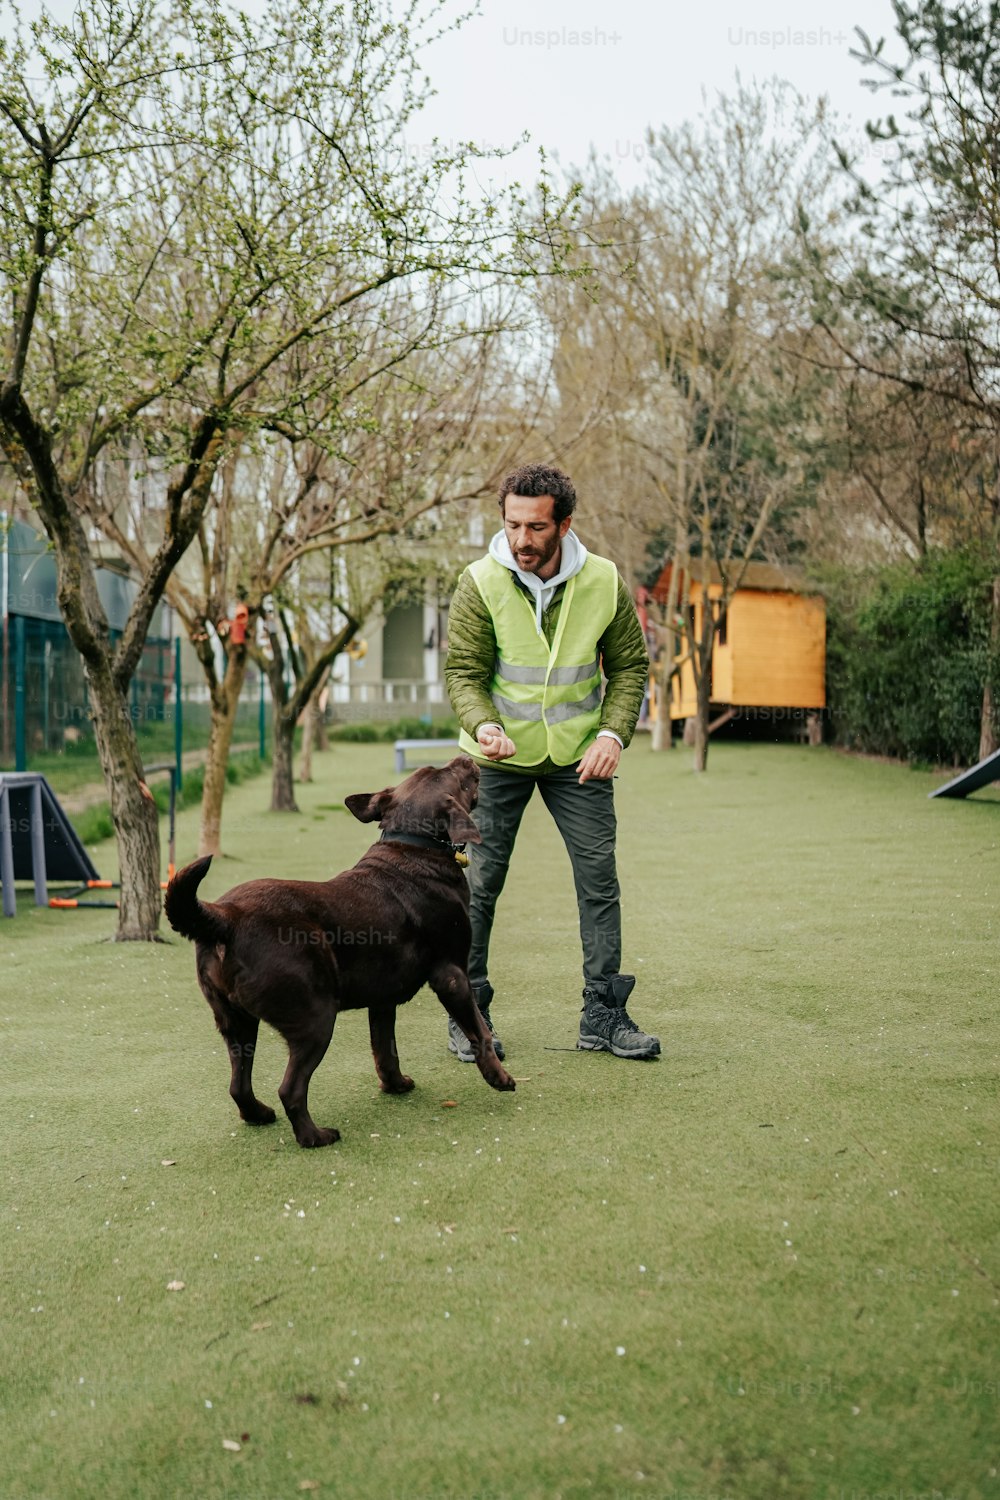 Un homme jouant avec un chien dans un parc